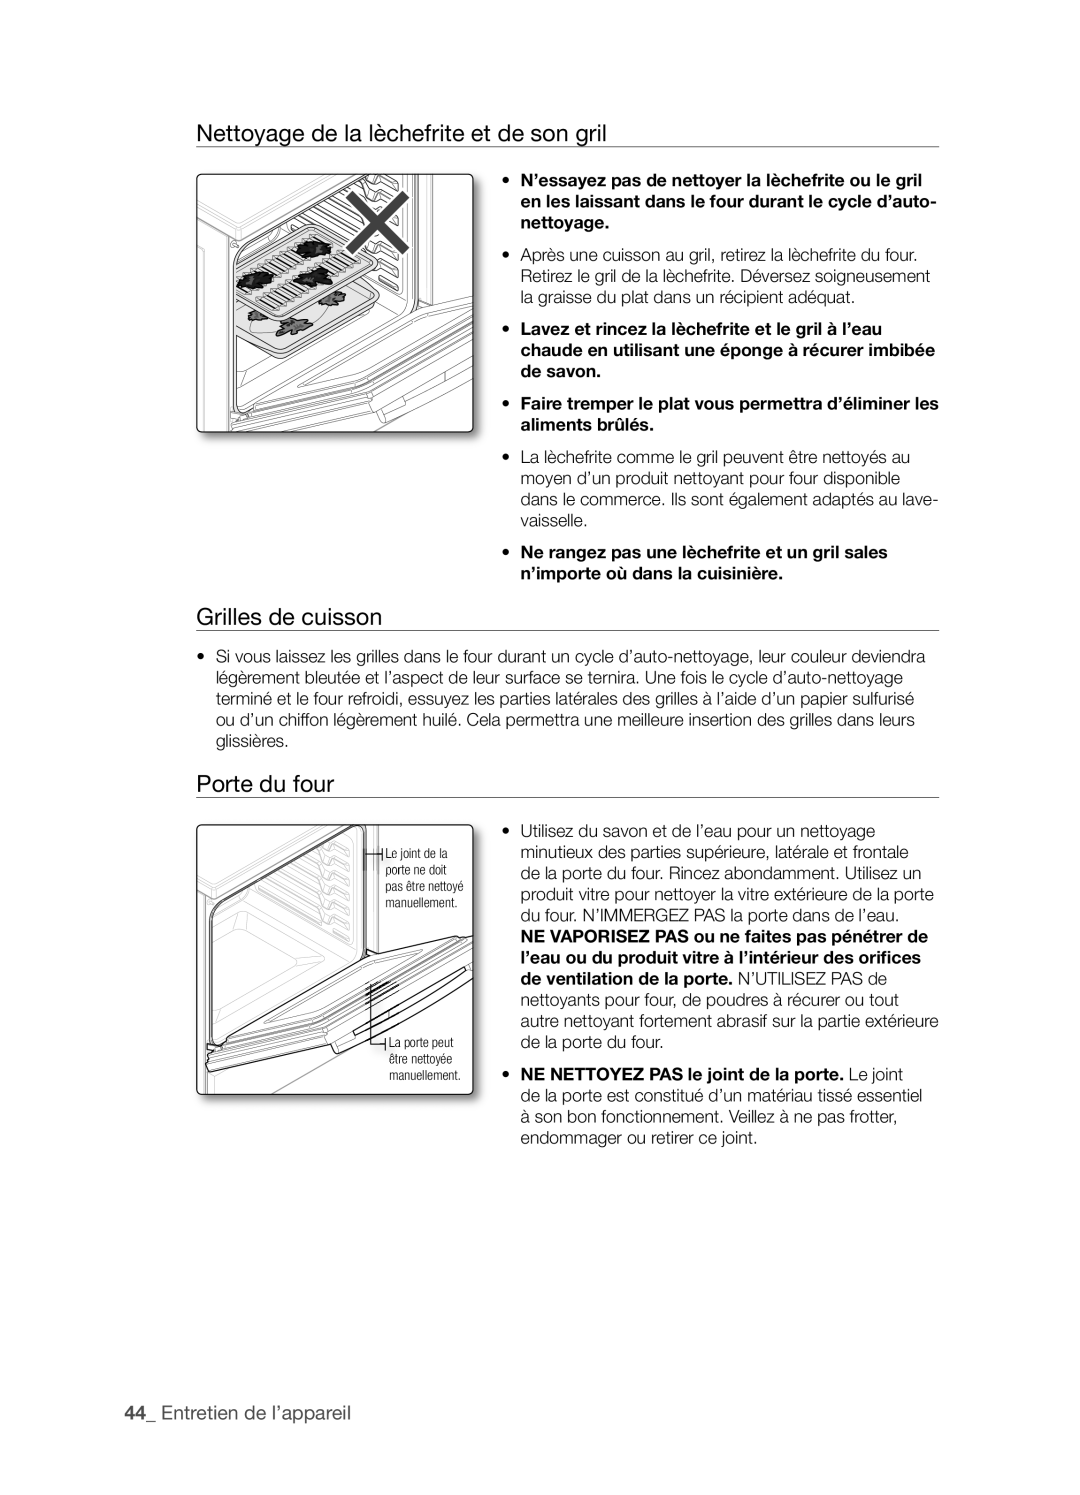 Samsung FTQ352IWX user manual Nettoyage de la lèchefrite et de son gril, Grilles de cuisson, Porte du four 